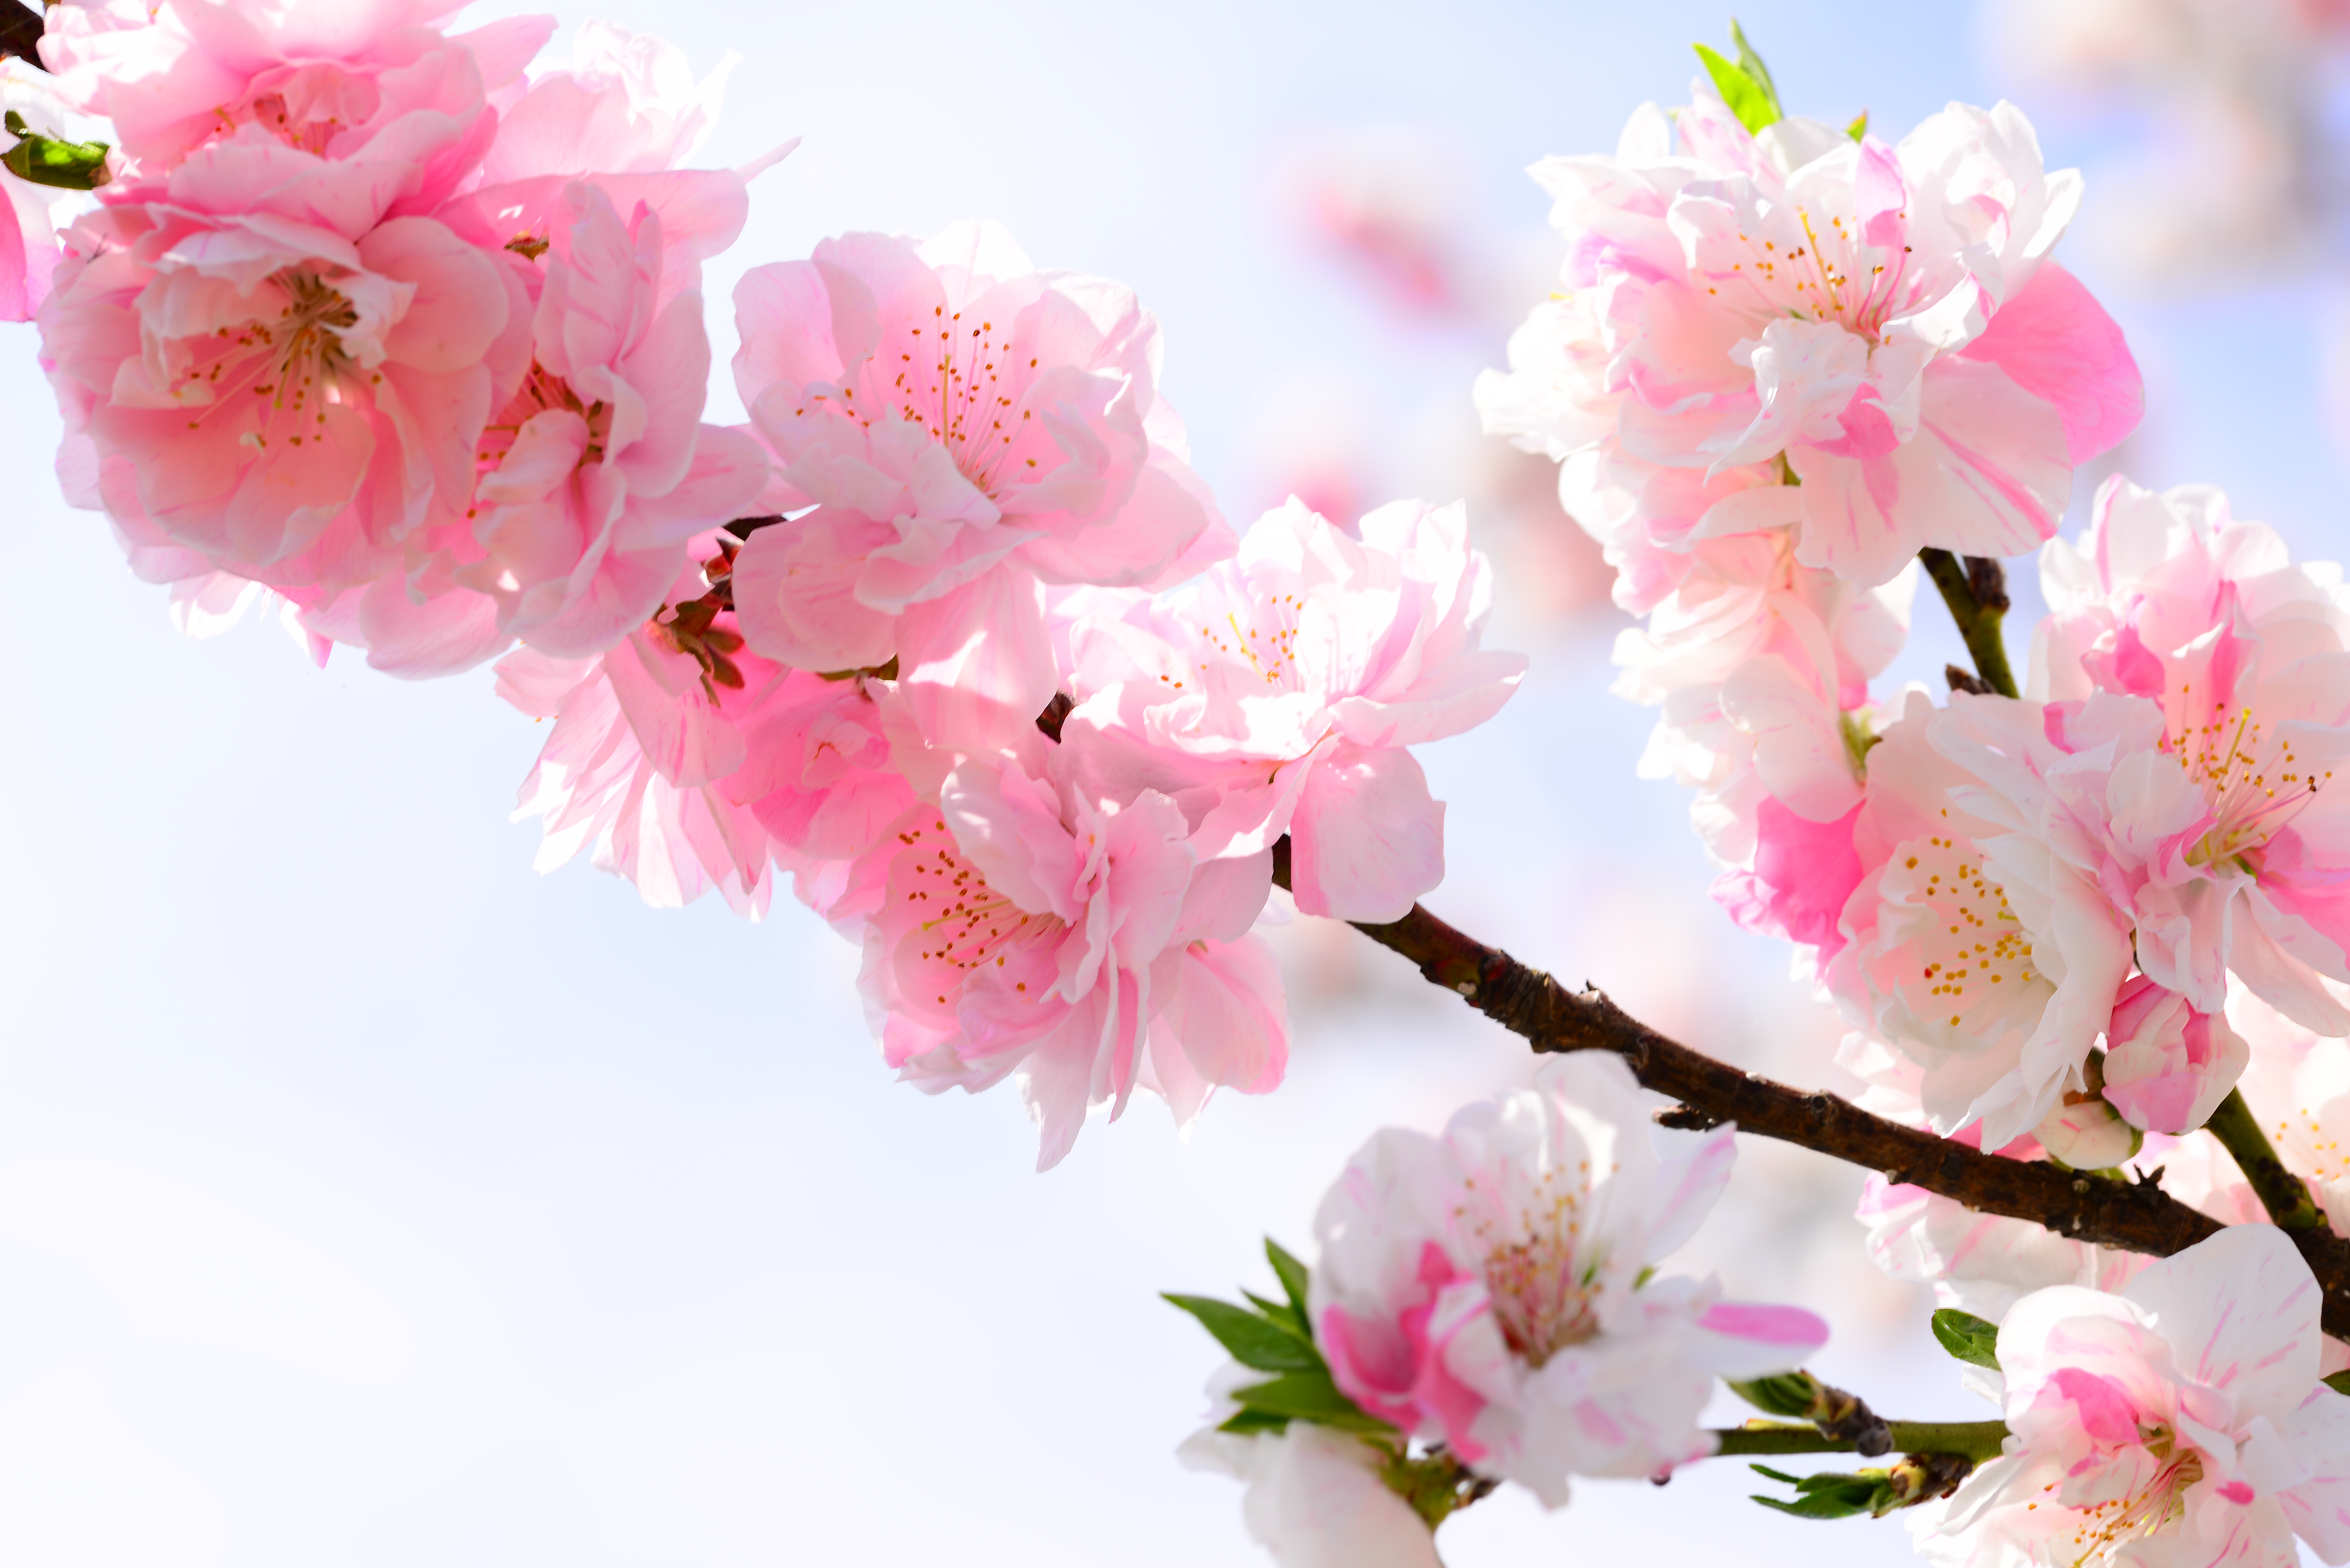 ひな祭り に 桃 を飾るのは何故かご存知ですか それは家族を守りたいという 愛 なのです いけばな光風流 家元 内藤正風